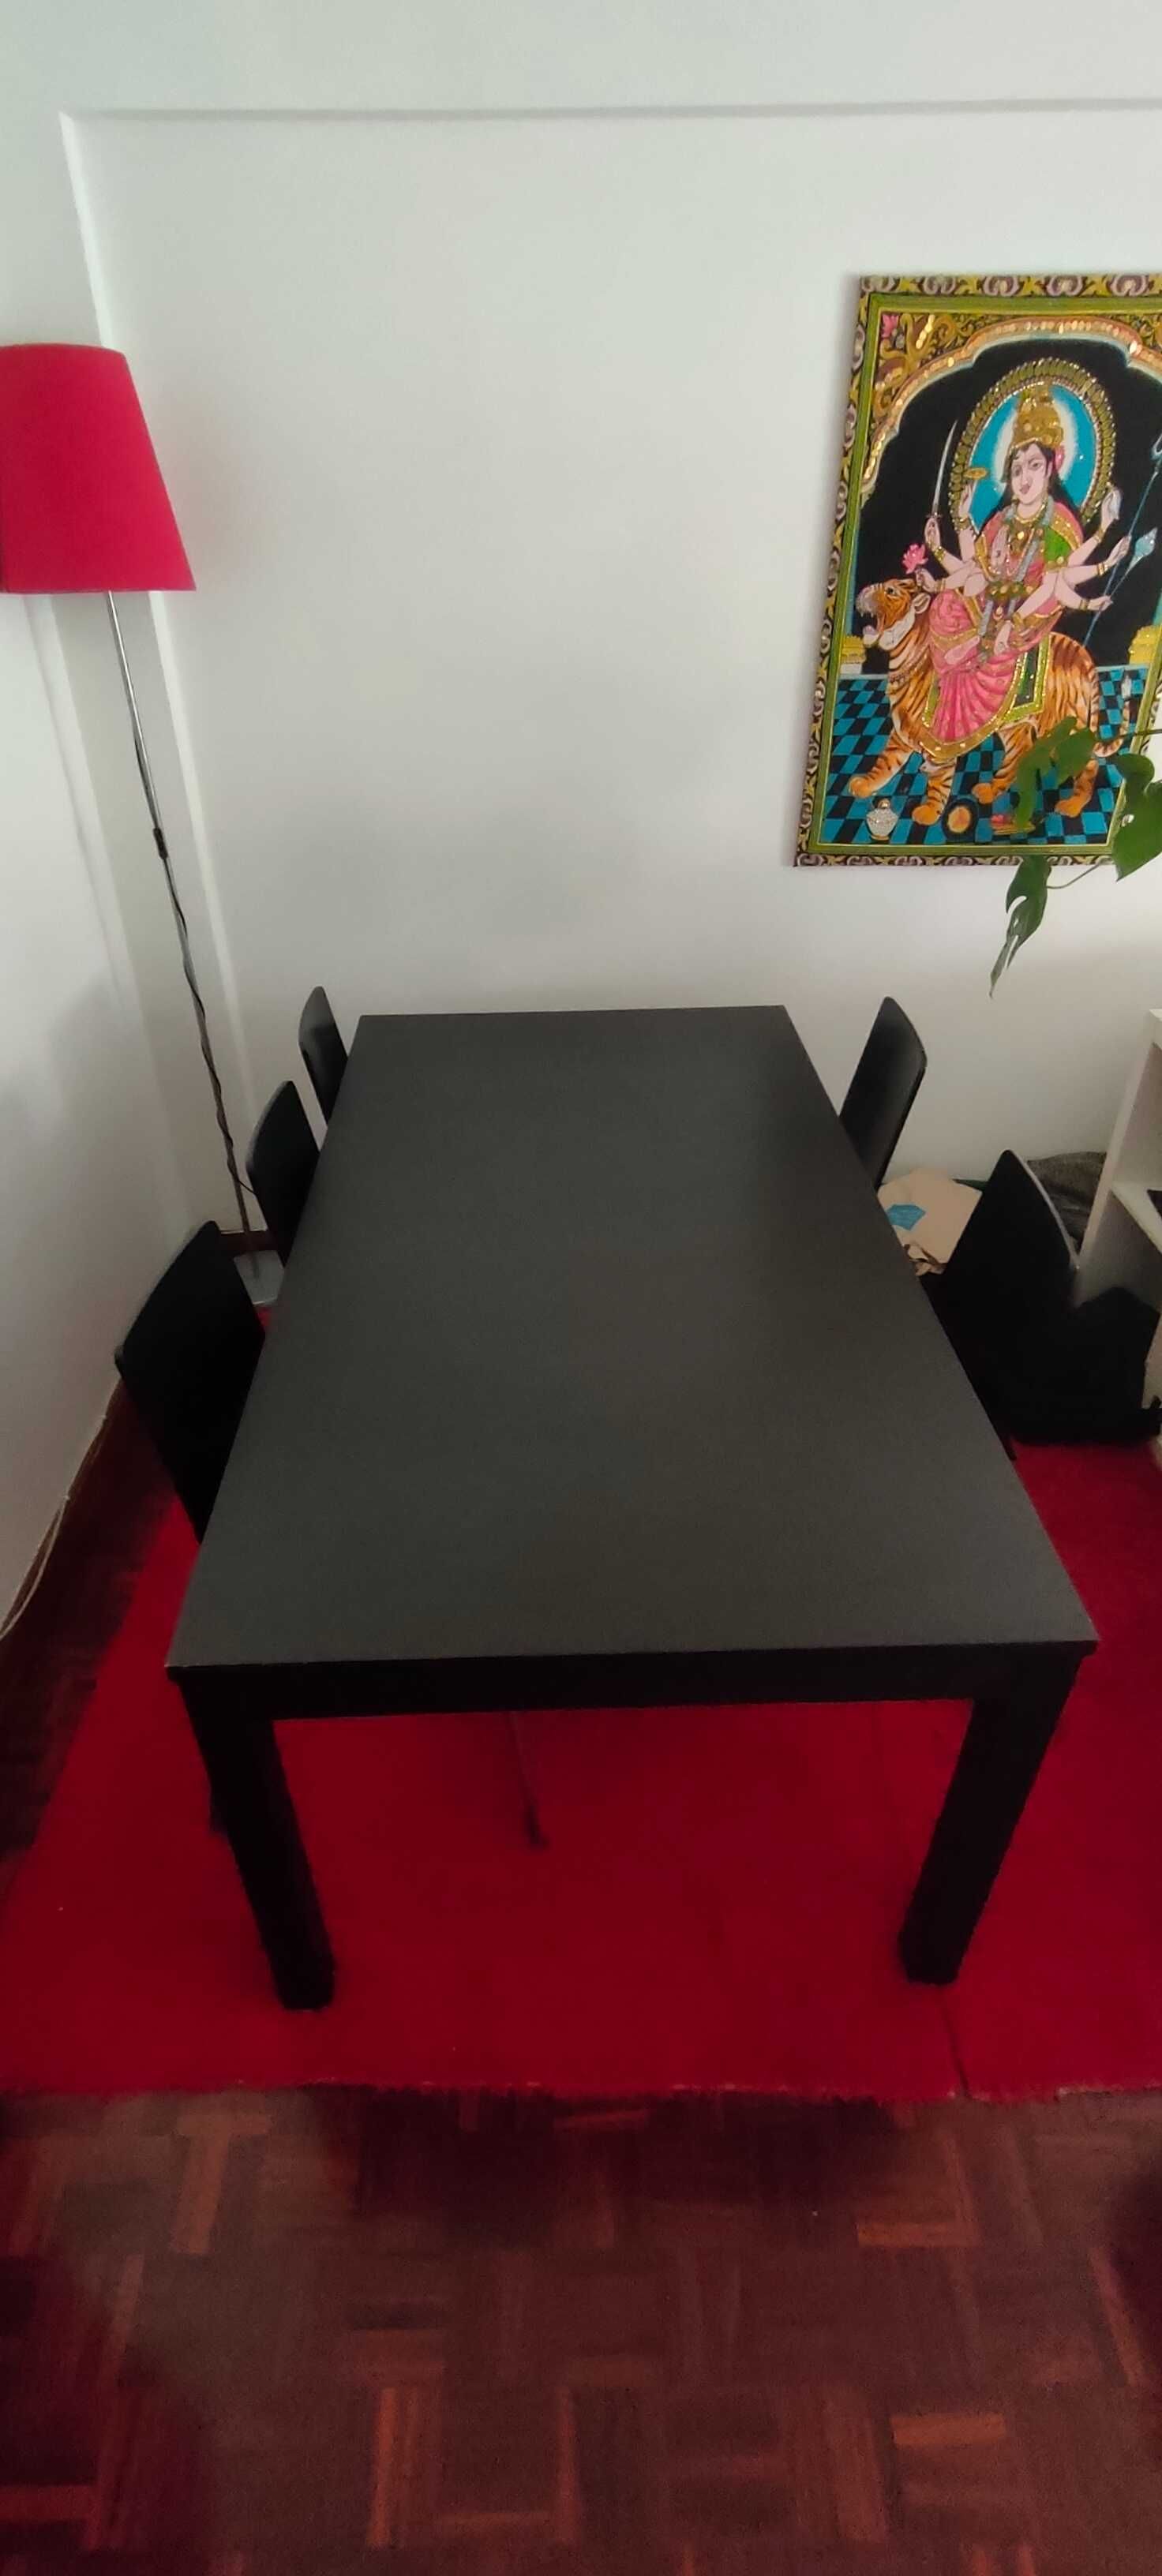 VENDO mesas e cadeiras - 170€